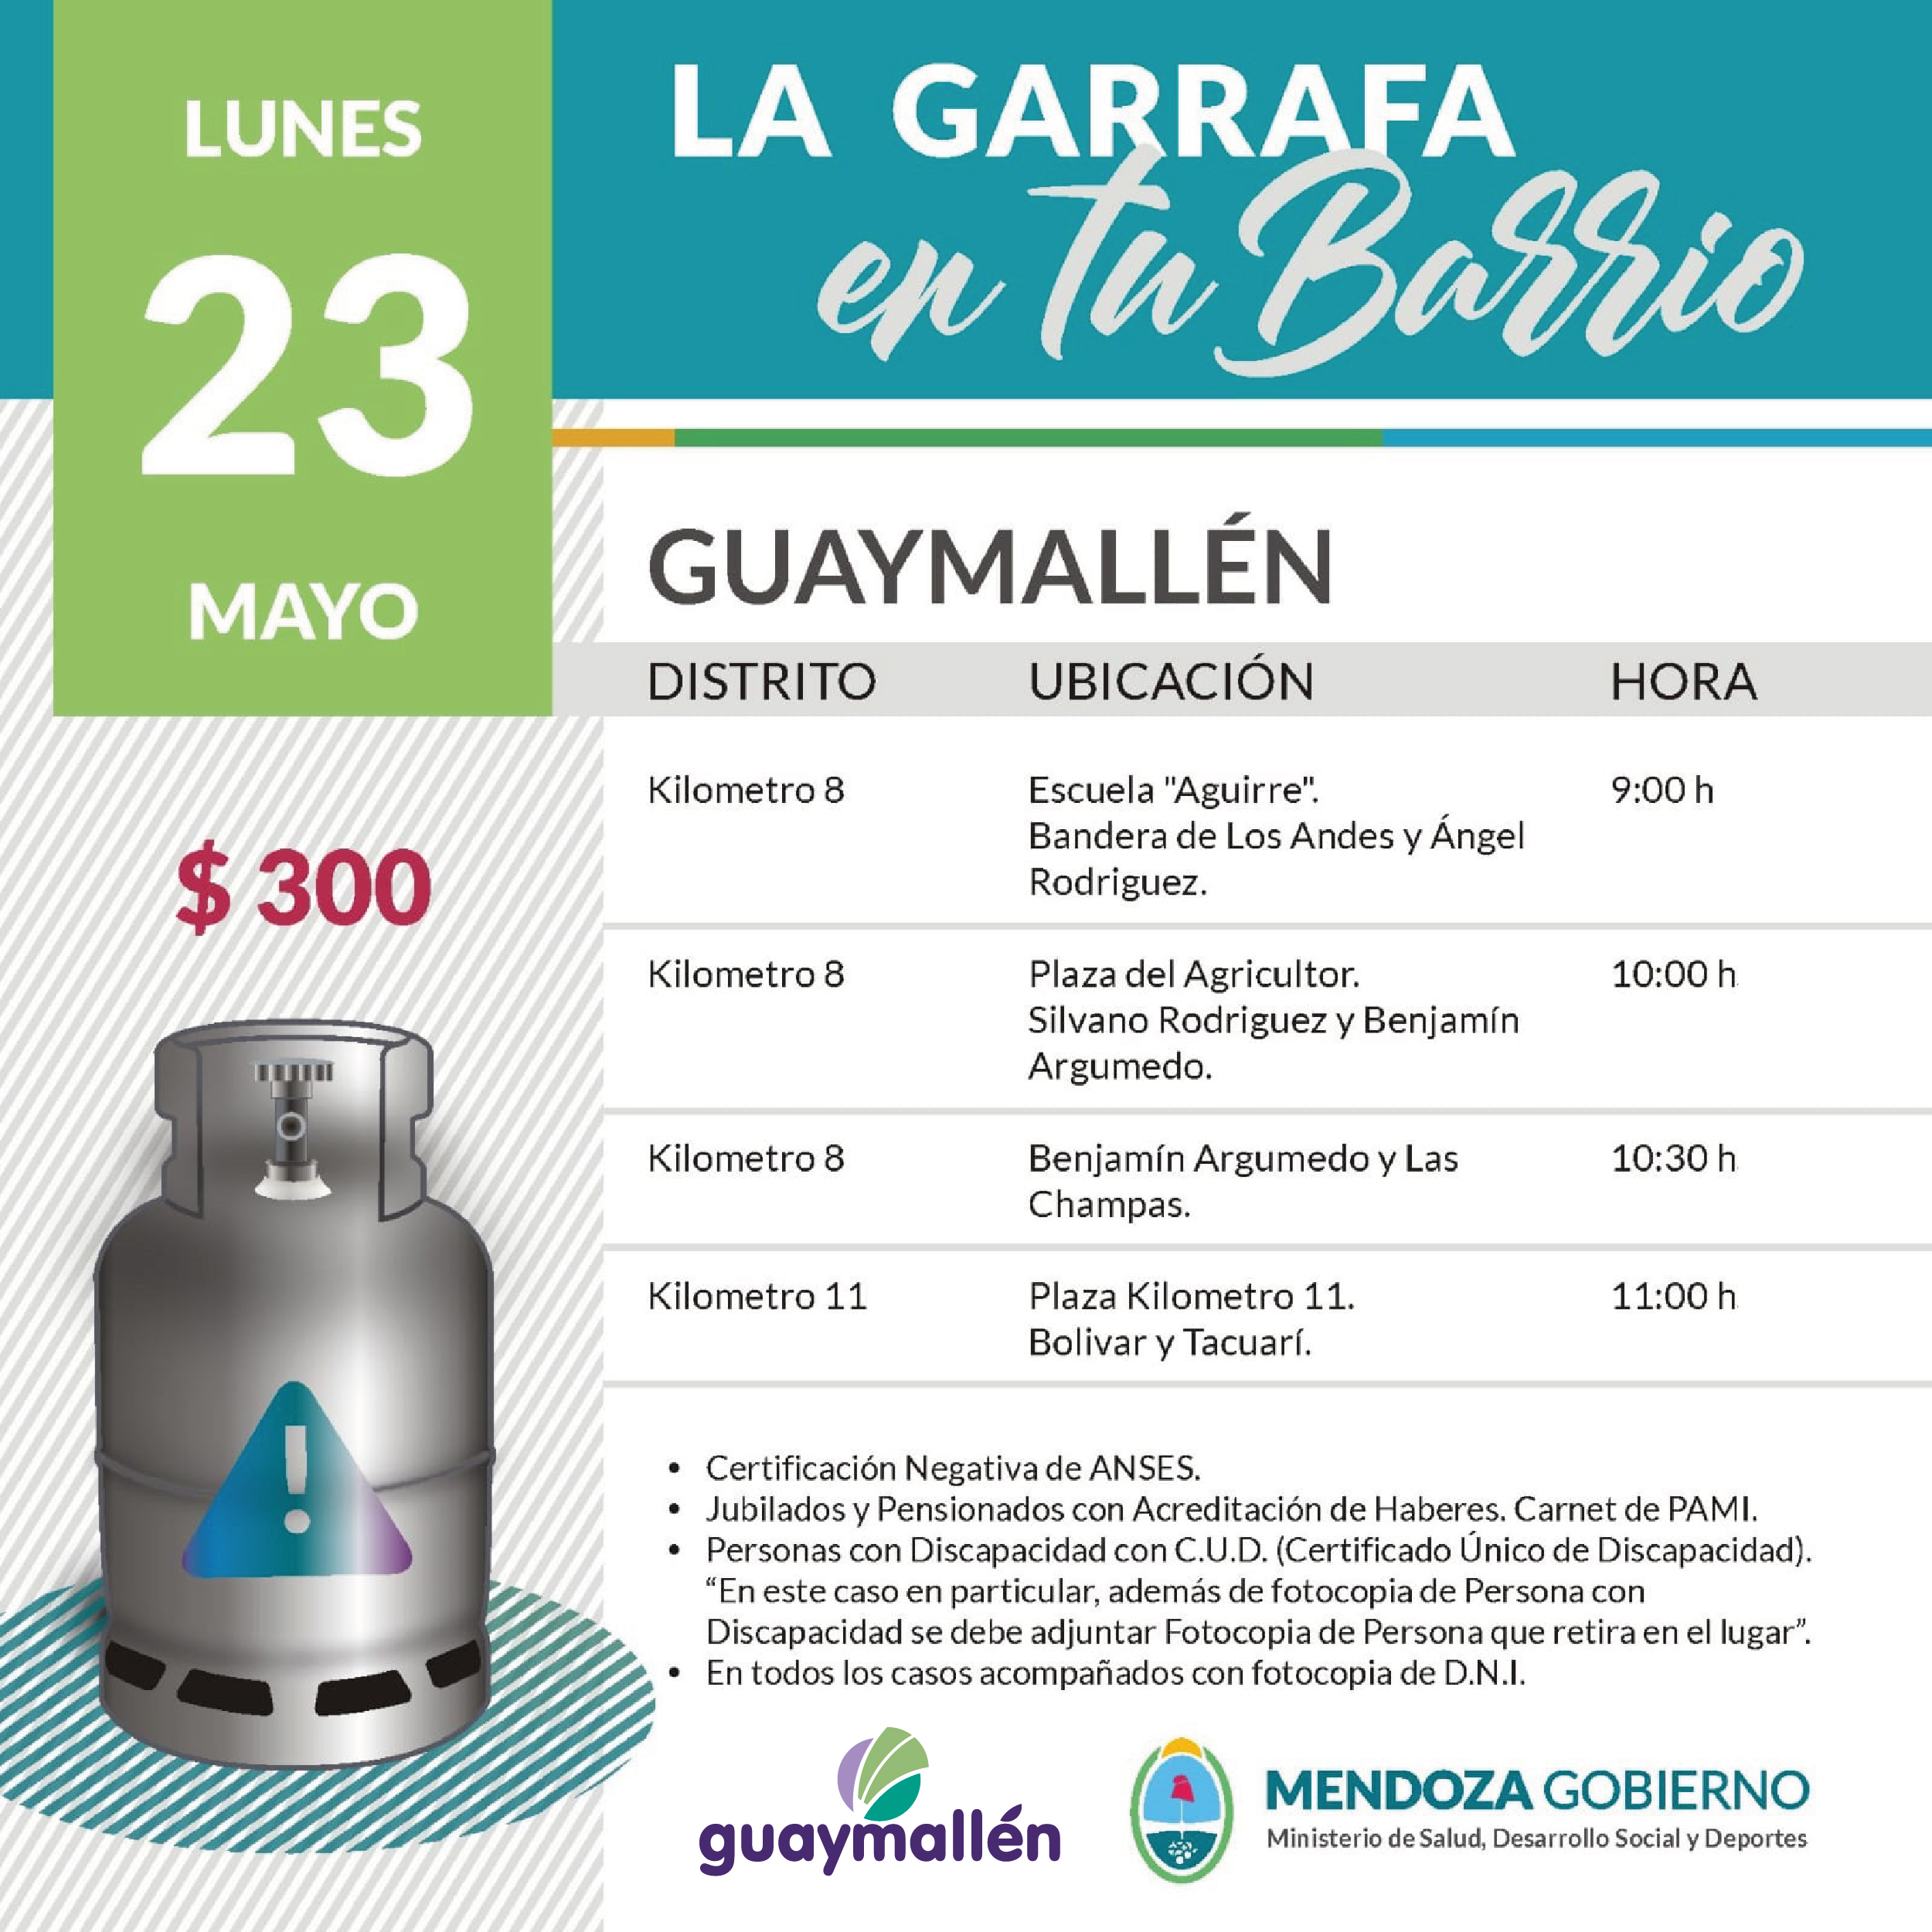 La Garrafa en tu Barrio con subsidio provincial. 23 de mayo.